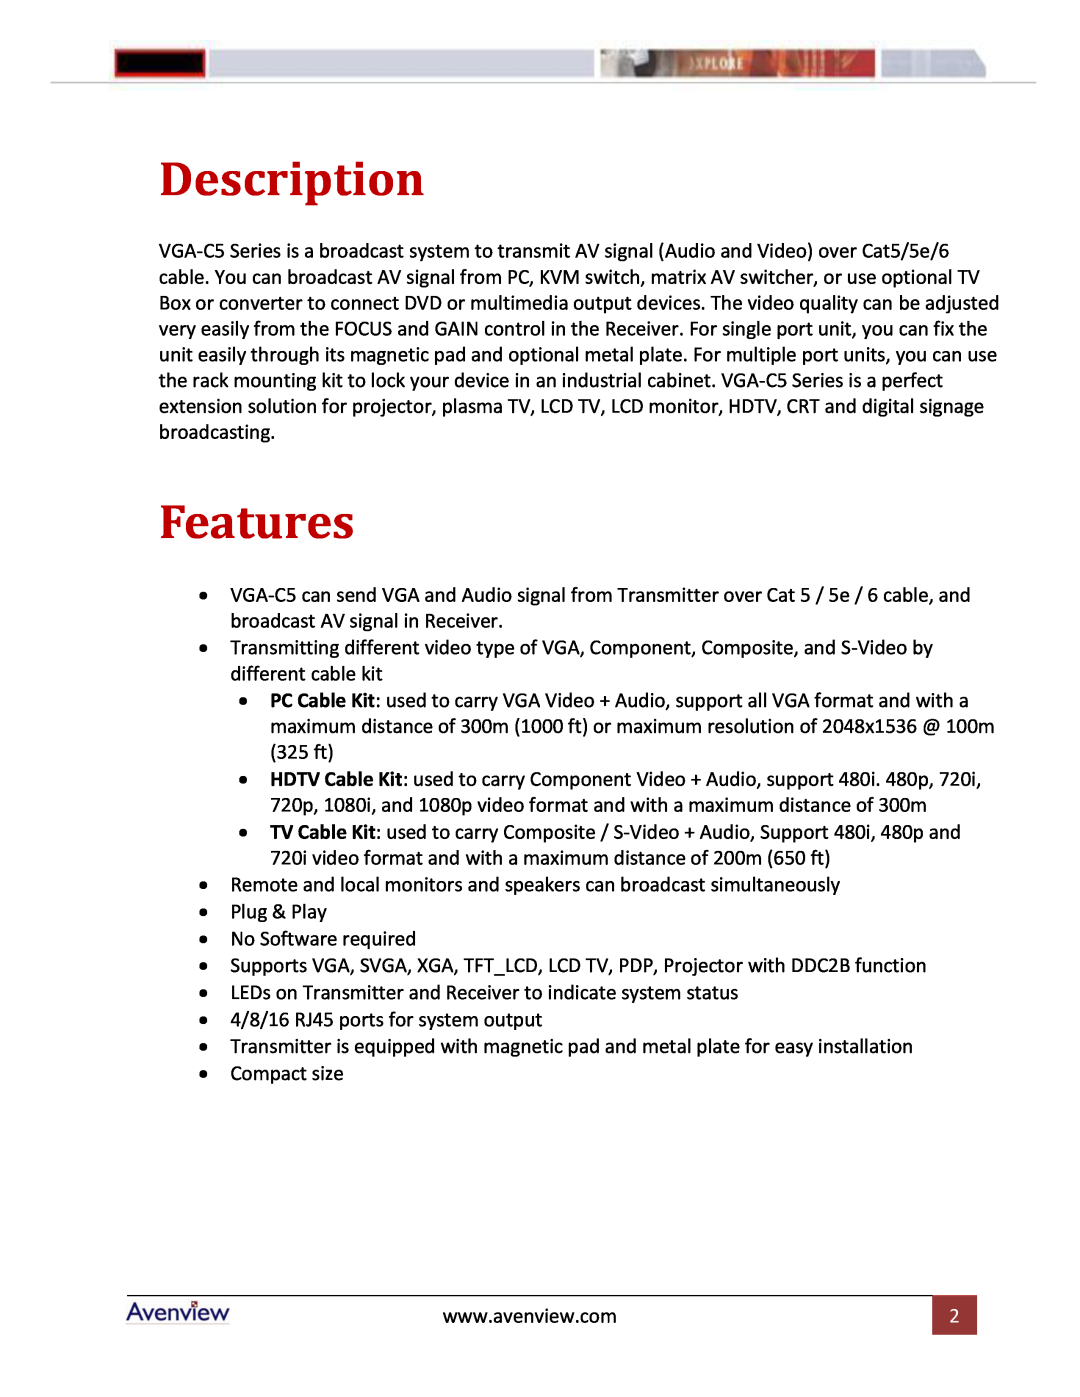 Avenview VGA-C5-8-SR, VGA-C5-R, VGA-C5-4-SR, VGA-C5-16 manual Description, Features 